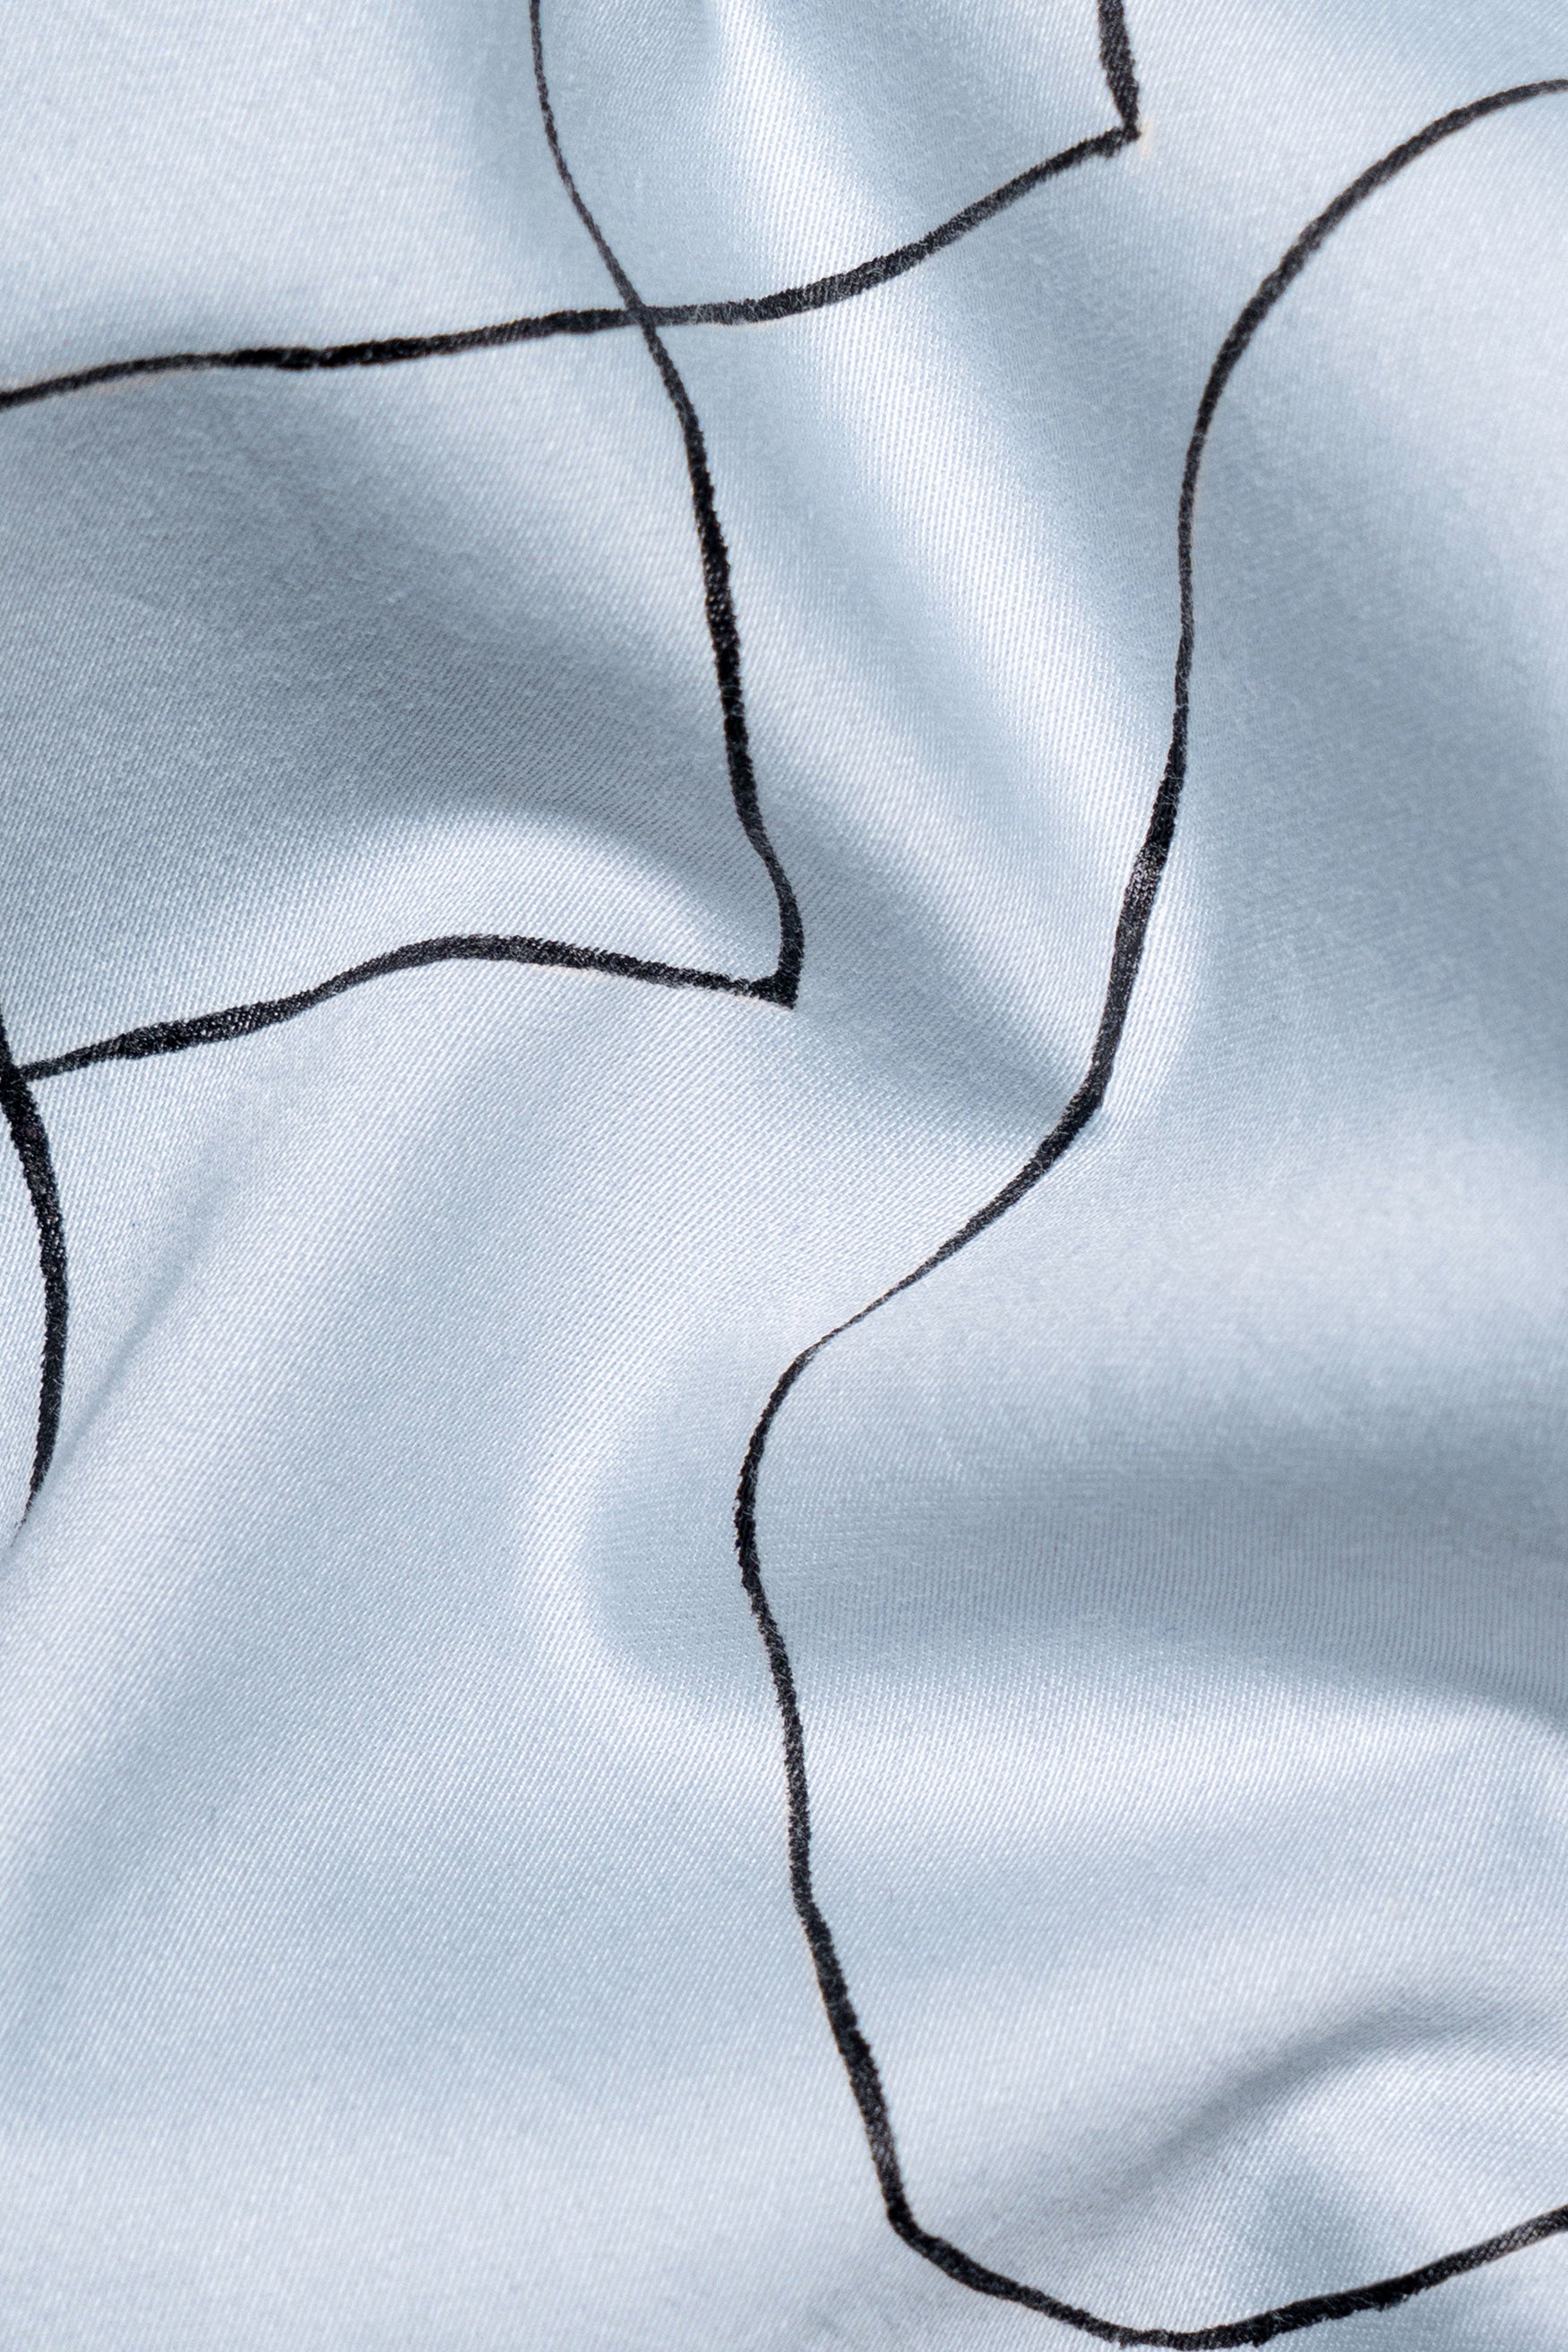 Aqua Blue Hand Painted Subtle Sheen Super Soft Premium Cotton Designer Shirt